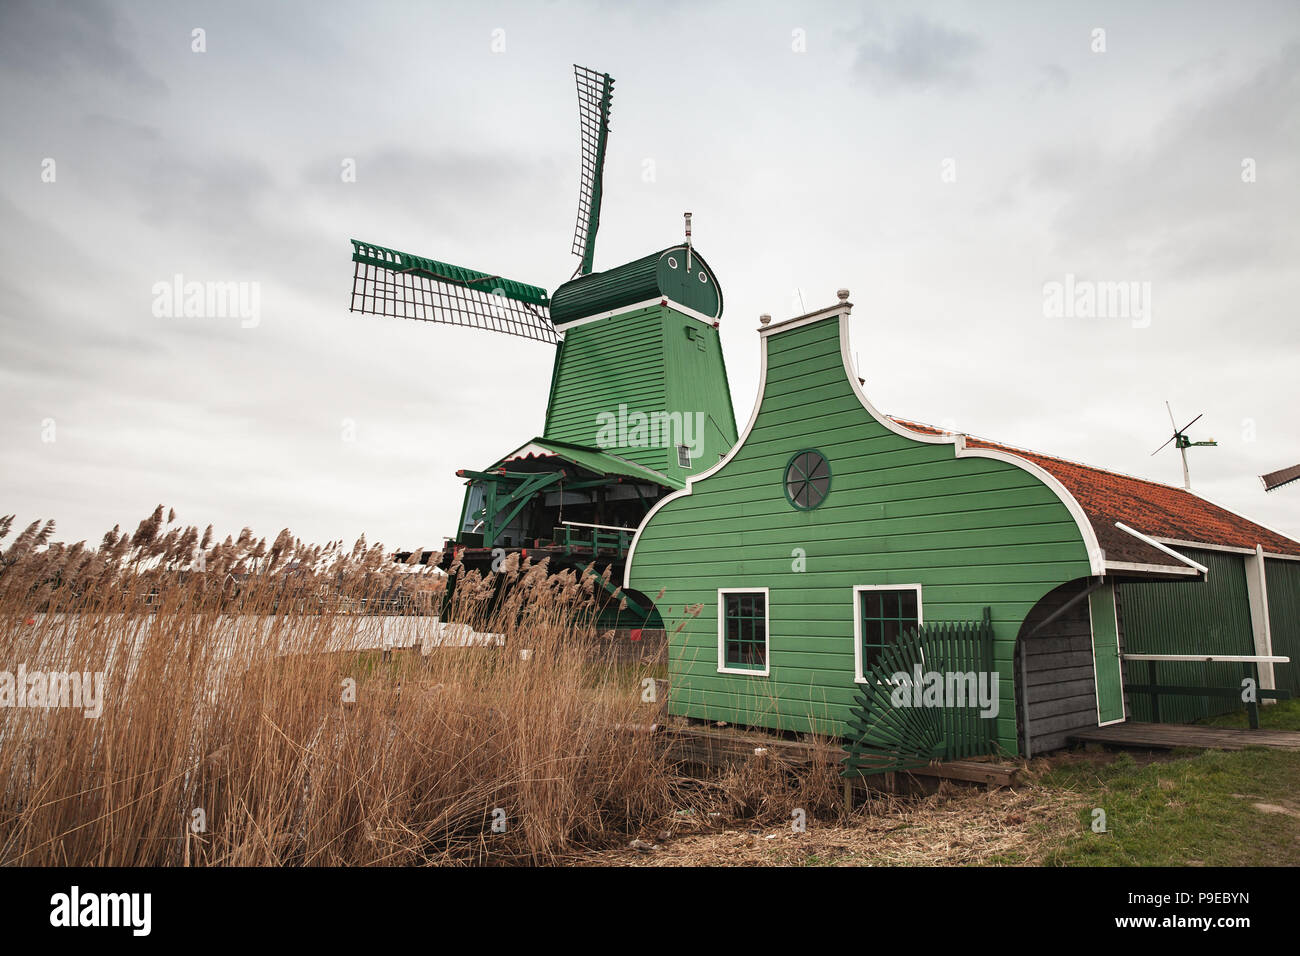 Windmühle in der Nähe von Green Scheune am Fluss Zaan Küste, Zaanse Schans Stadt, beliebten touristischen Attraktionen der Niederlande. Vorort von Amsterdam Stockfoto